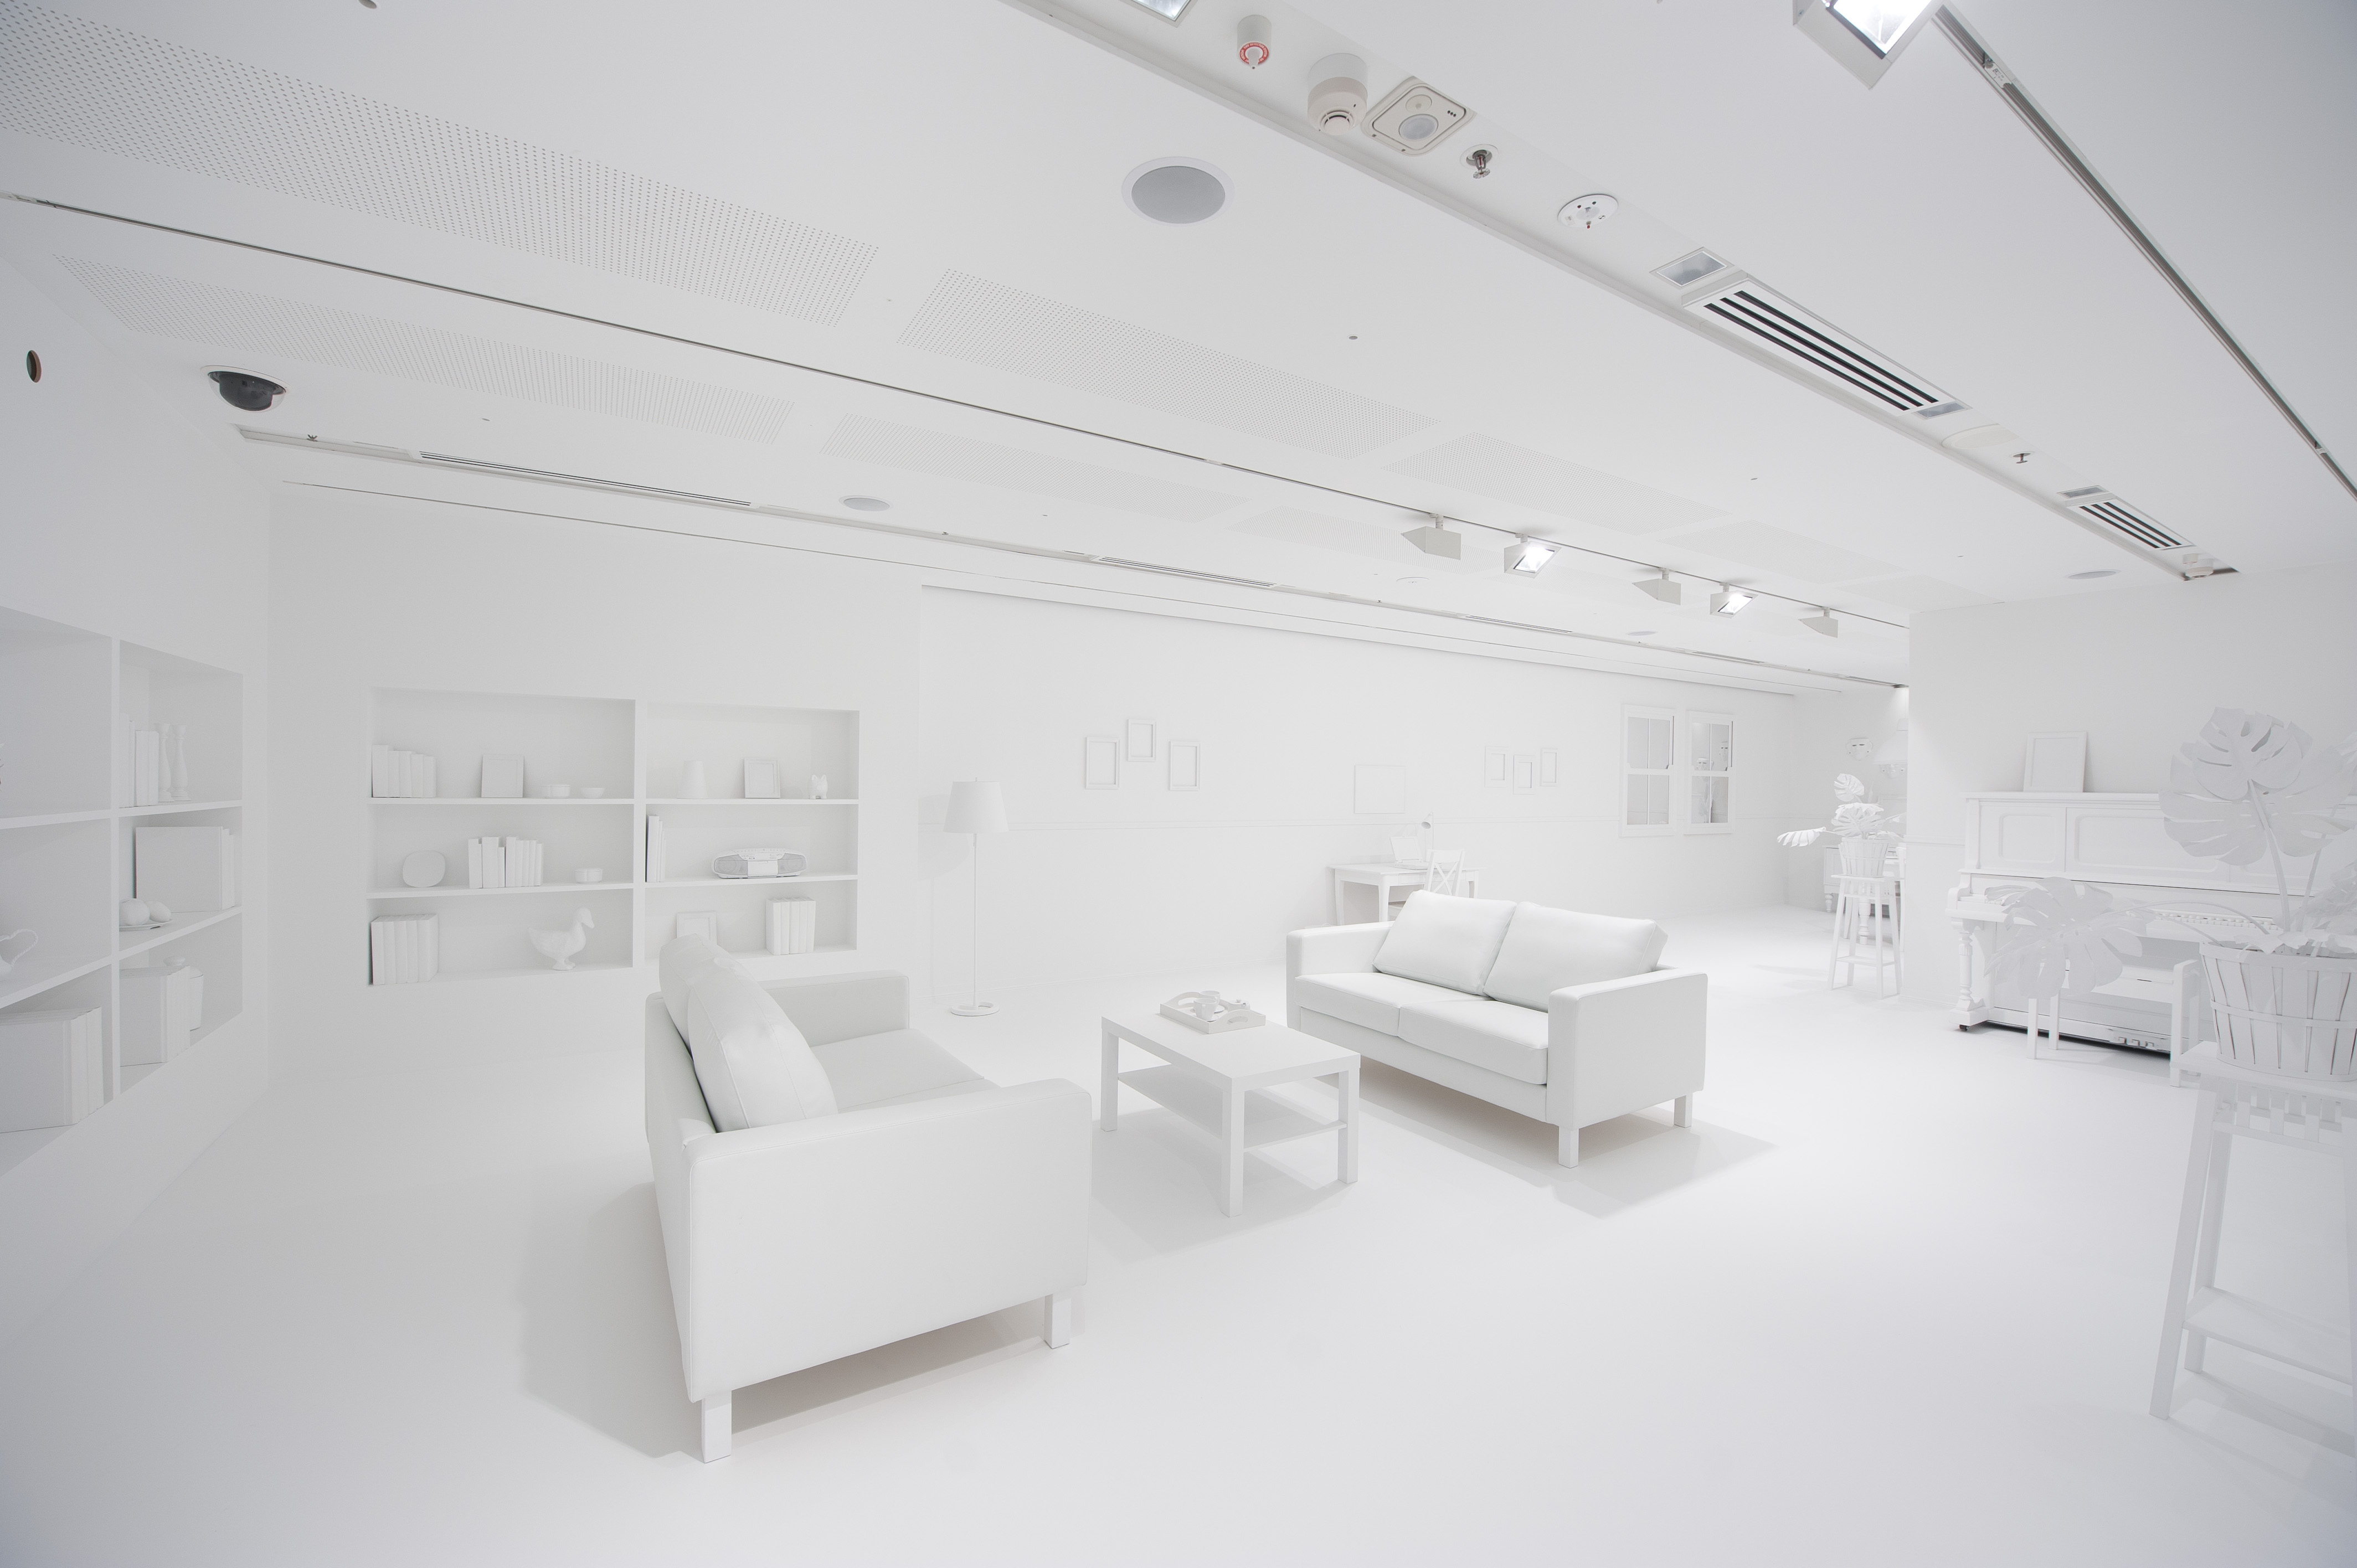 White Room - Escape Room in Vienna, Austria